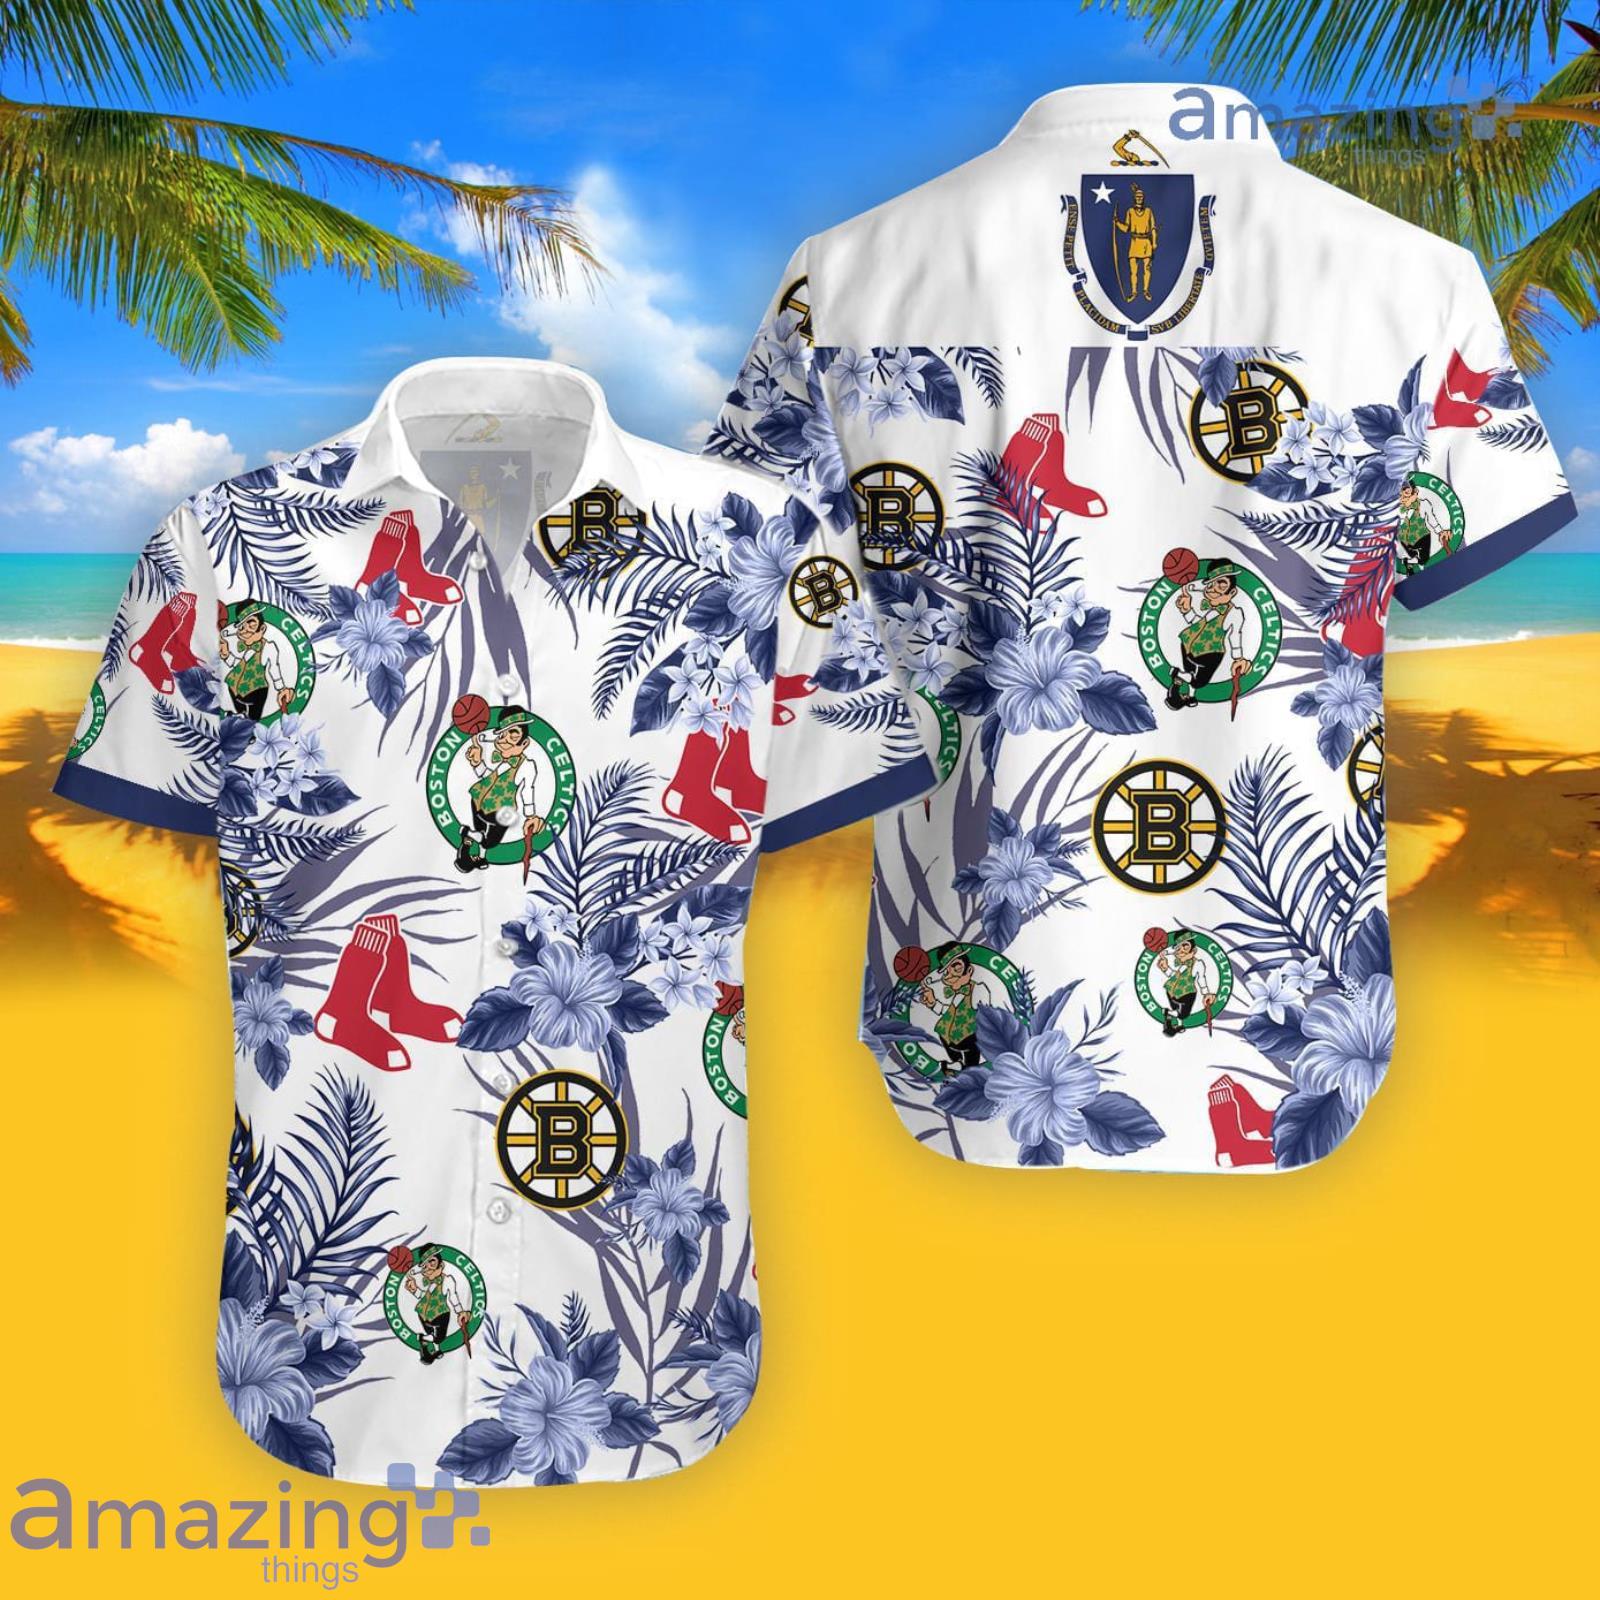 Celtics Bruins Red Sox Hawaiian Shirt For Men And Women